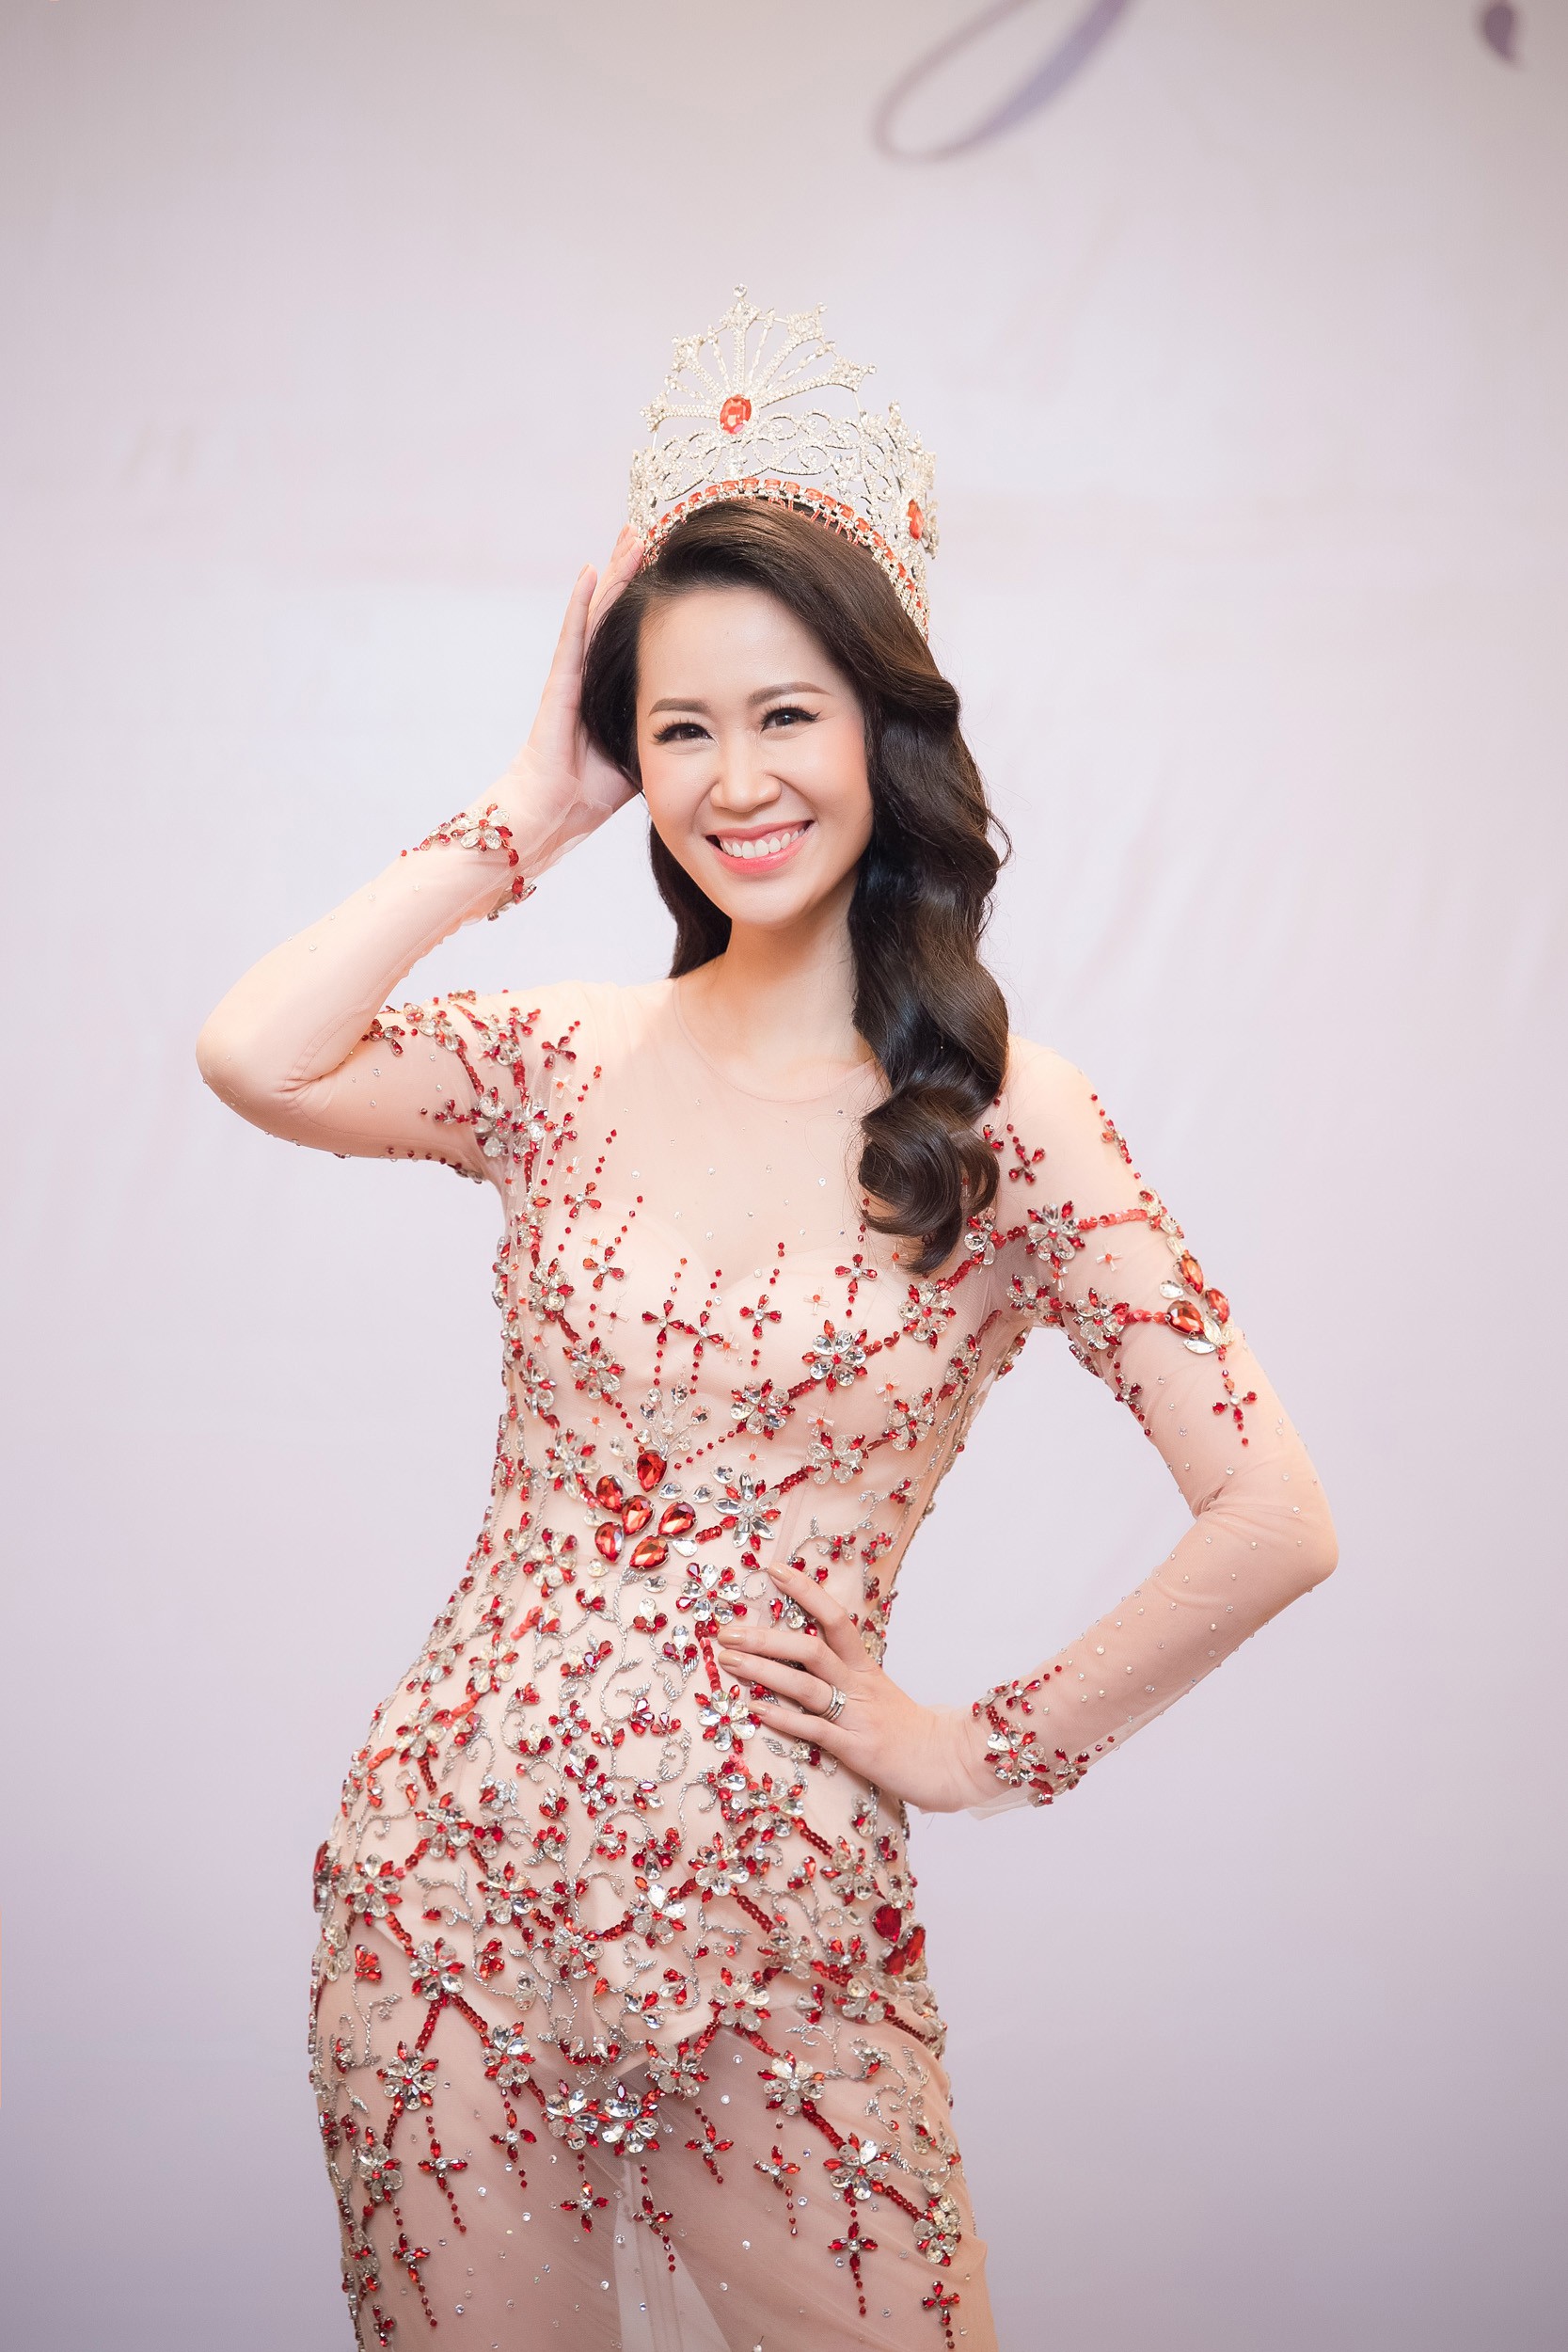 Dương Thùy Linh kể về cái ôm sau cánh gà trước khi được xướng tên Hoa hậu Quý bà toàn thế giới 2018 - Ảnh 3.